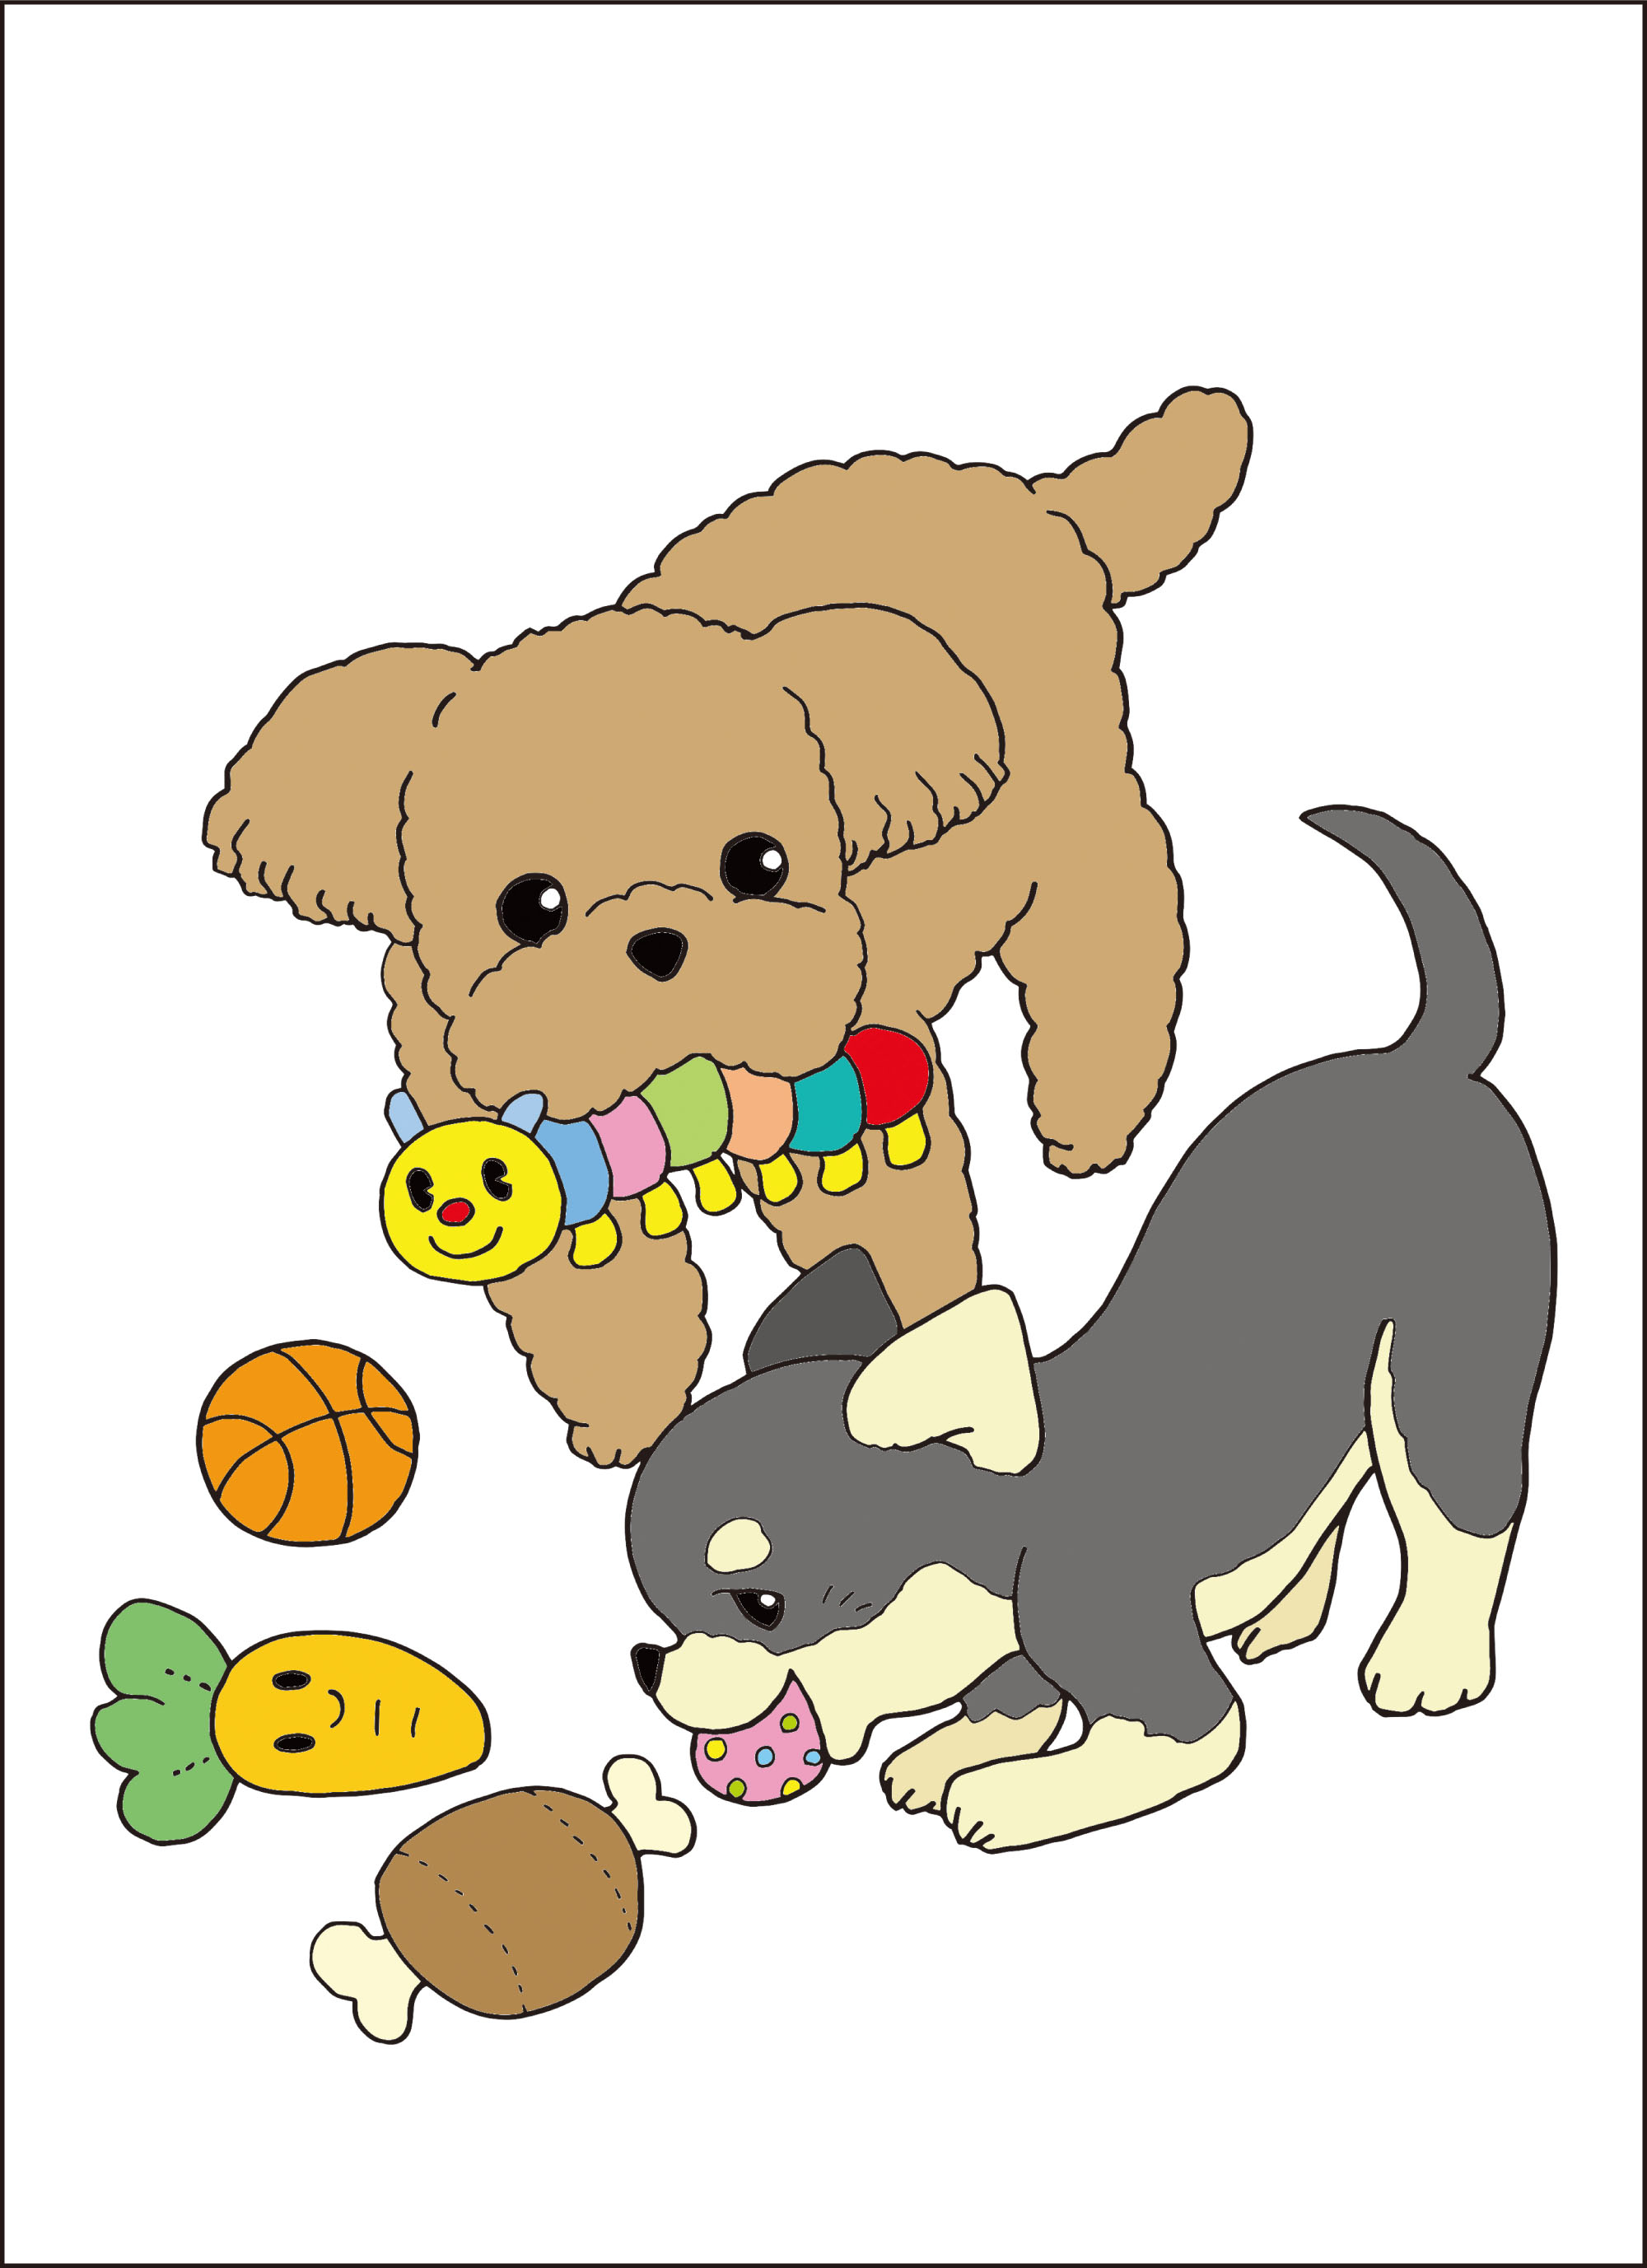 レク素材 犬 介護レク広場 レク素材やレクネタ 企画書 の無料ダウンロード